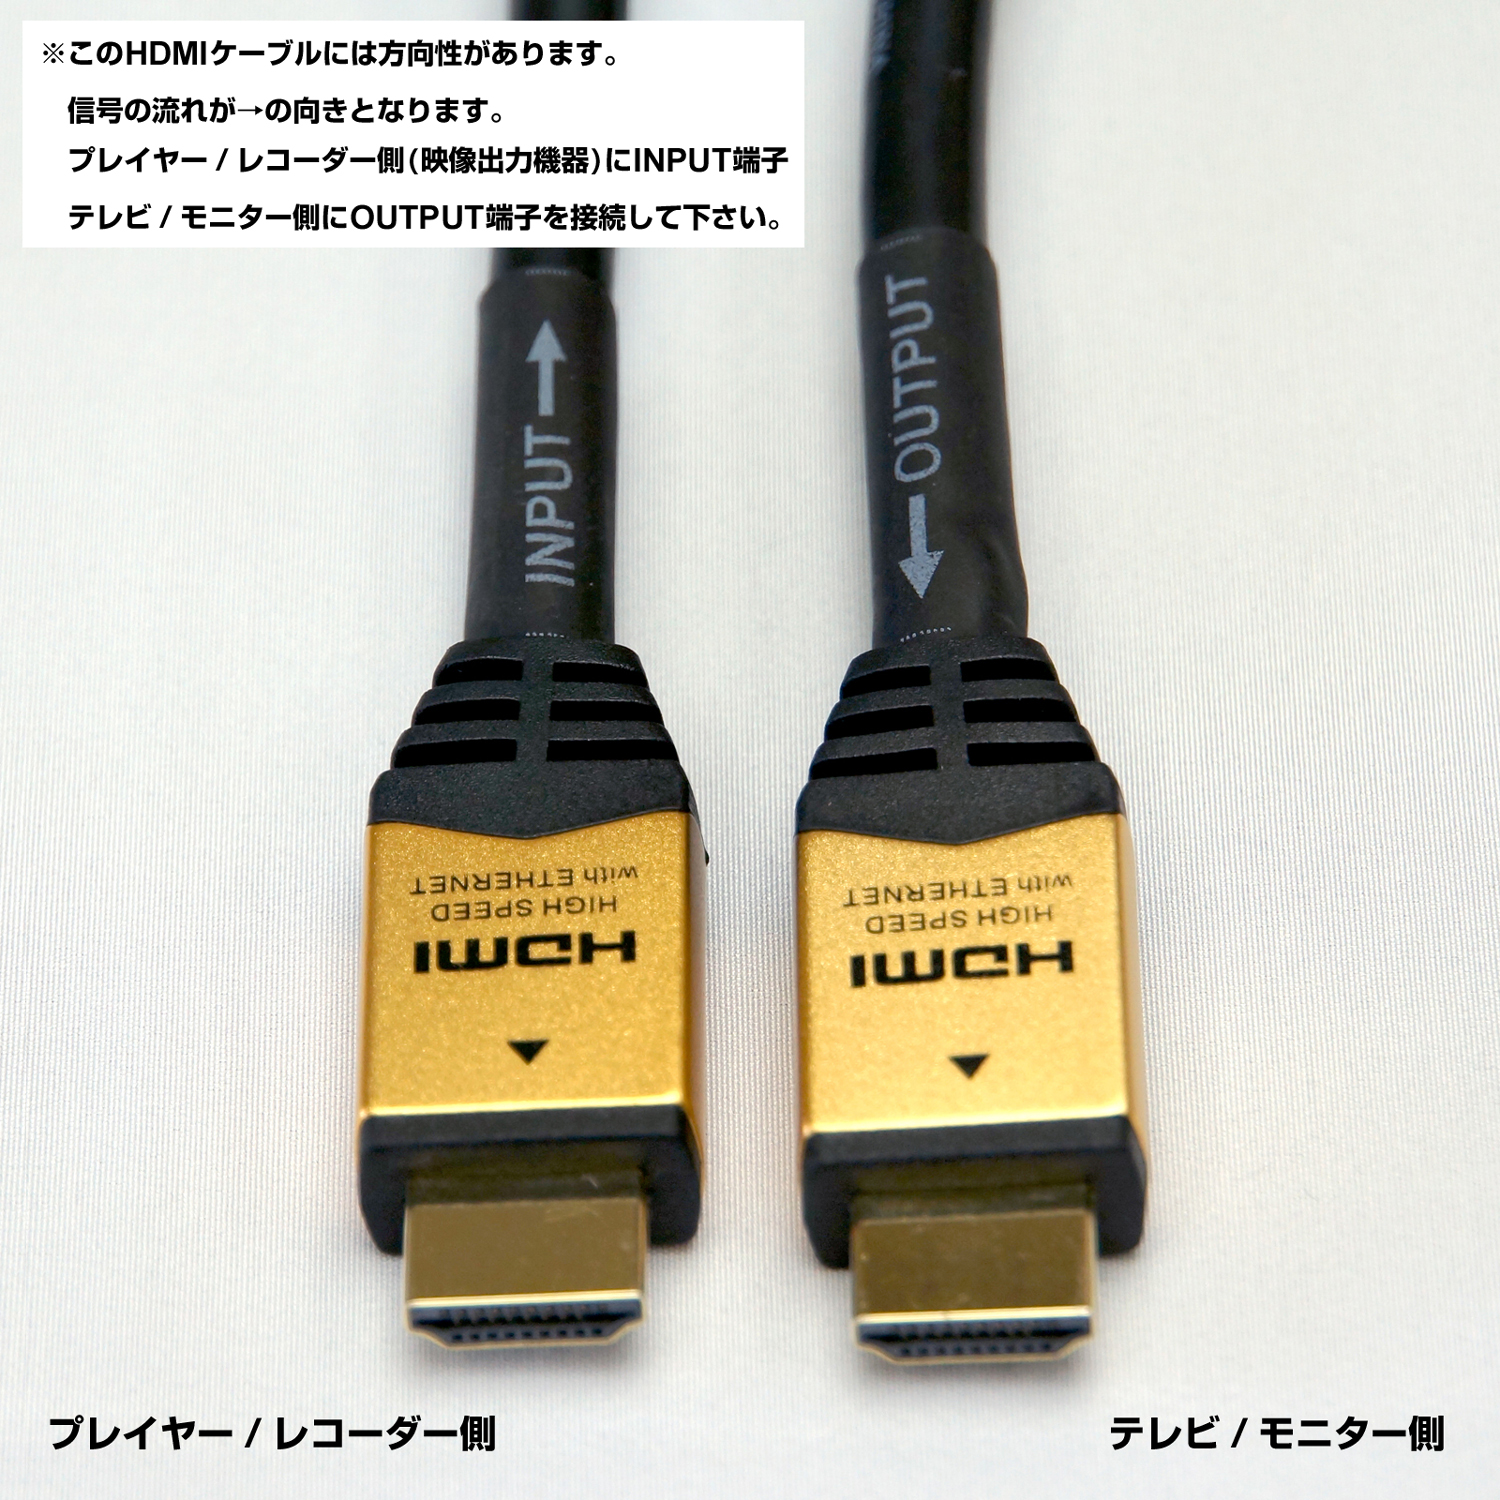 ホーリックダイレクト / HDMIケーブル イコライザー内蔵型 HDM150-592GD